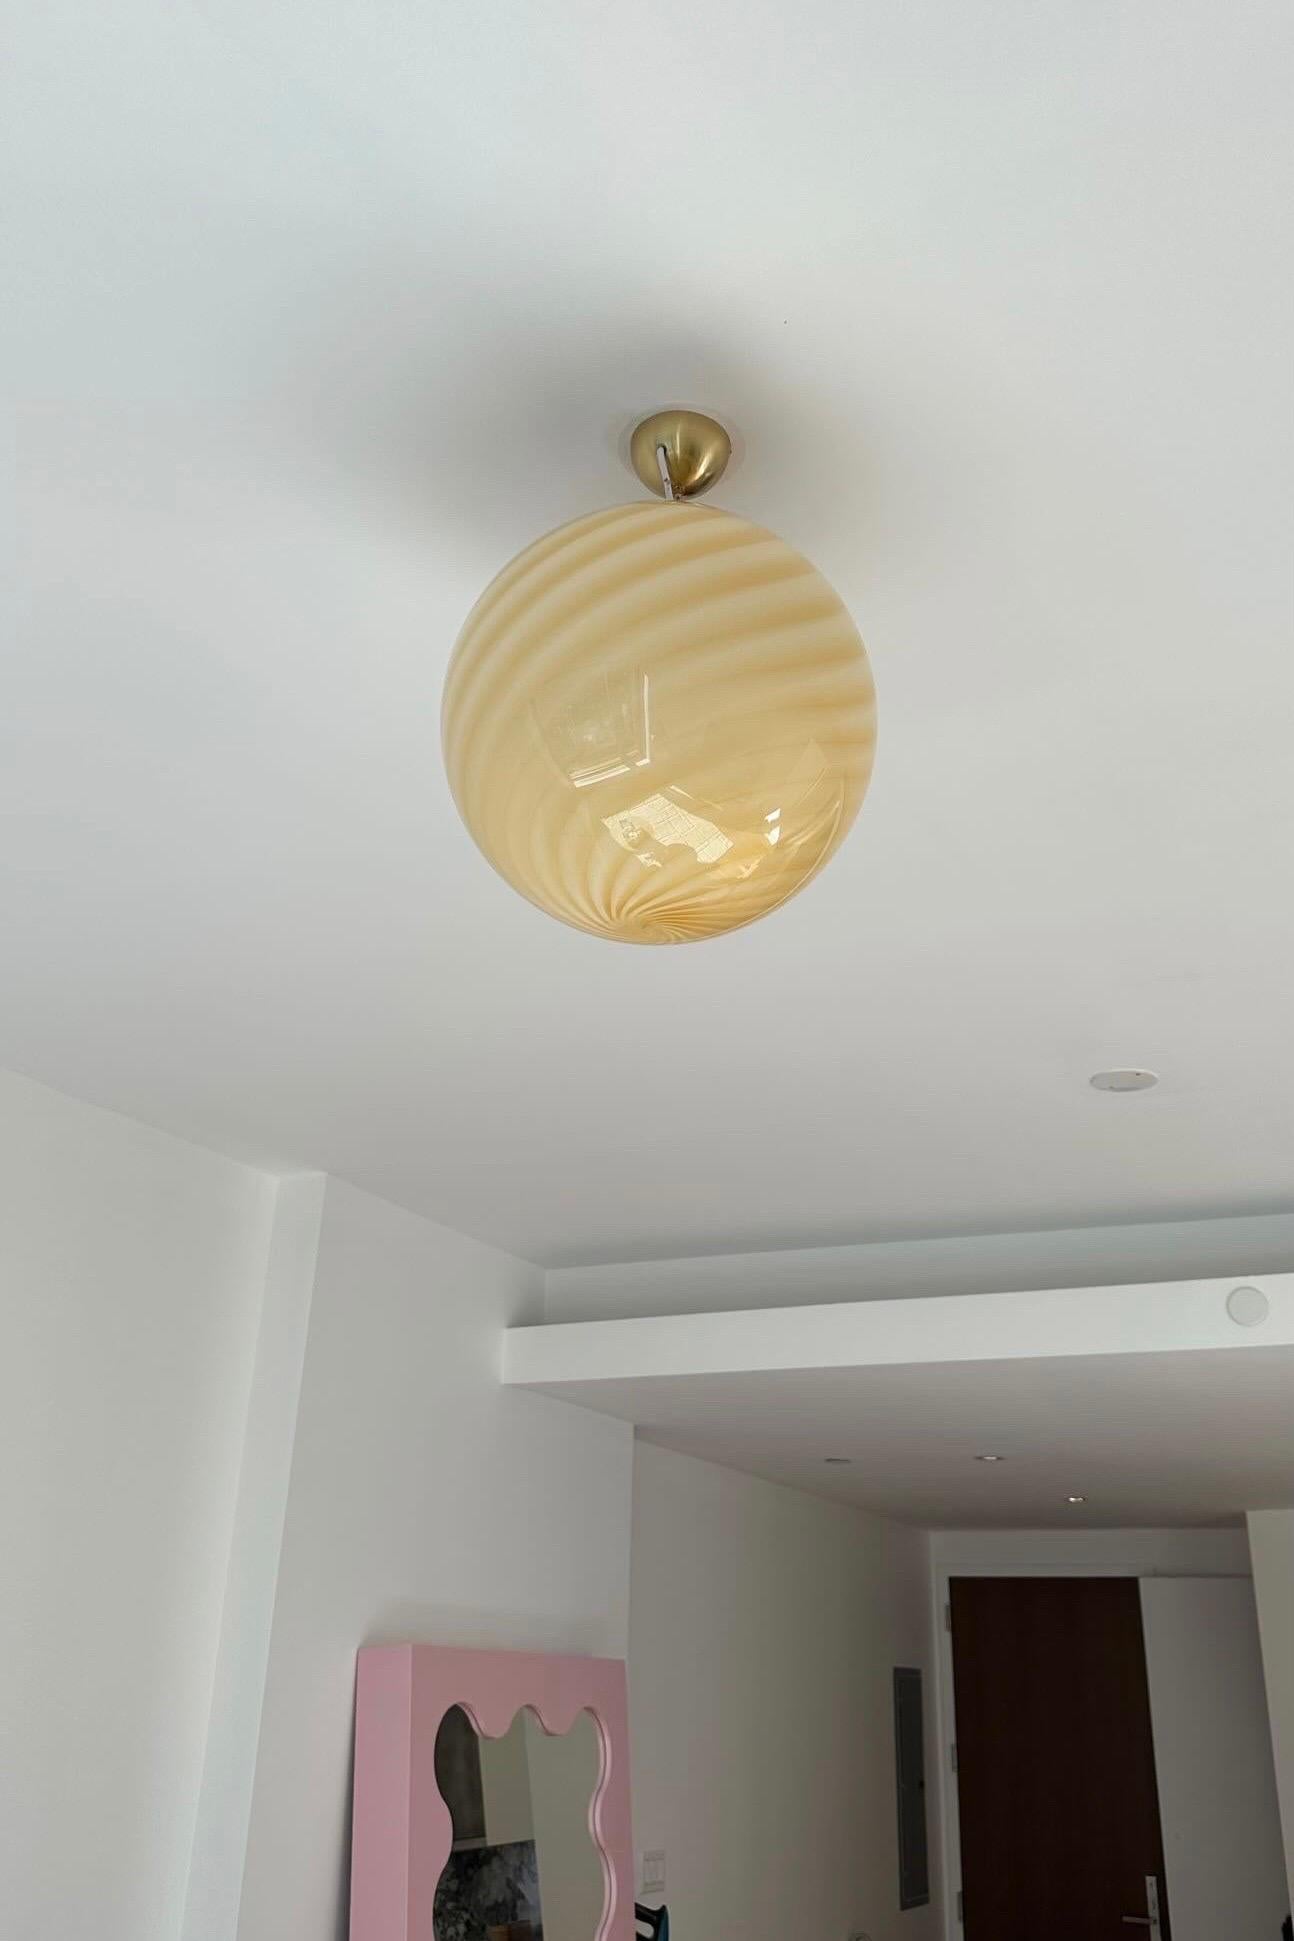 Große neue italienische Murano Candy Pendel-Deckenlampe in einem schönen weichen gelben Schatten. Mundgeblasenes Glas in runder Form mit Wirbelmuster. E27-Fassung. Mit verstellbarer, vermessingter Aufhängung und transparenter Kordel.
Handgefertigt